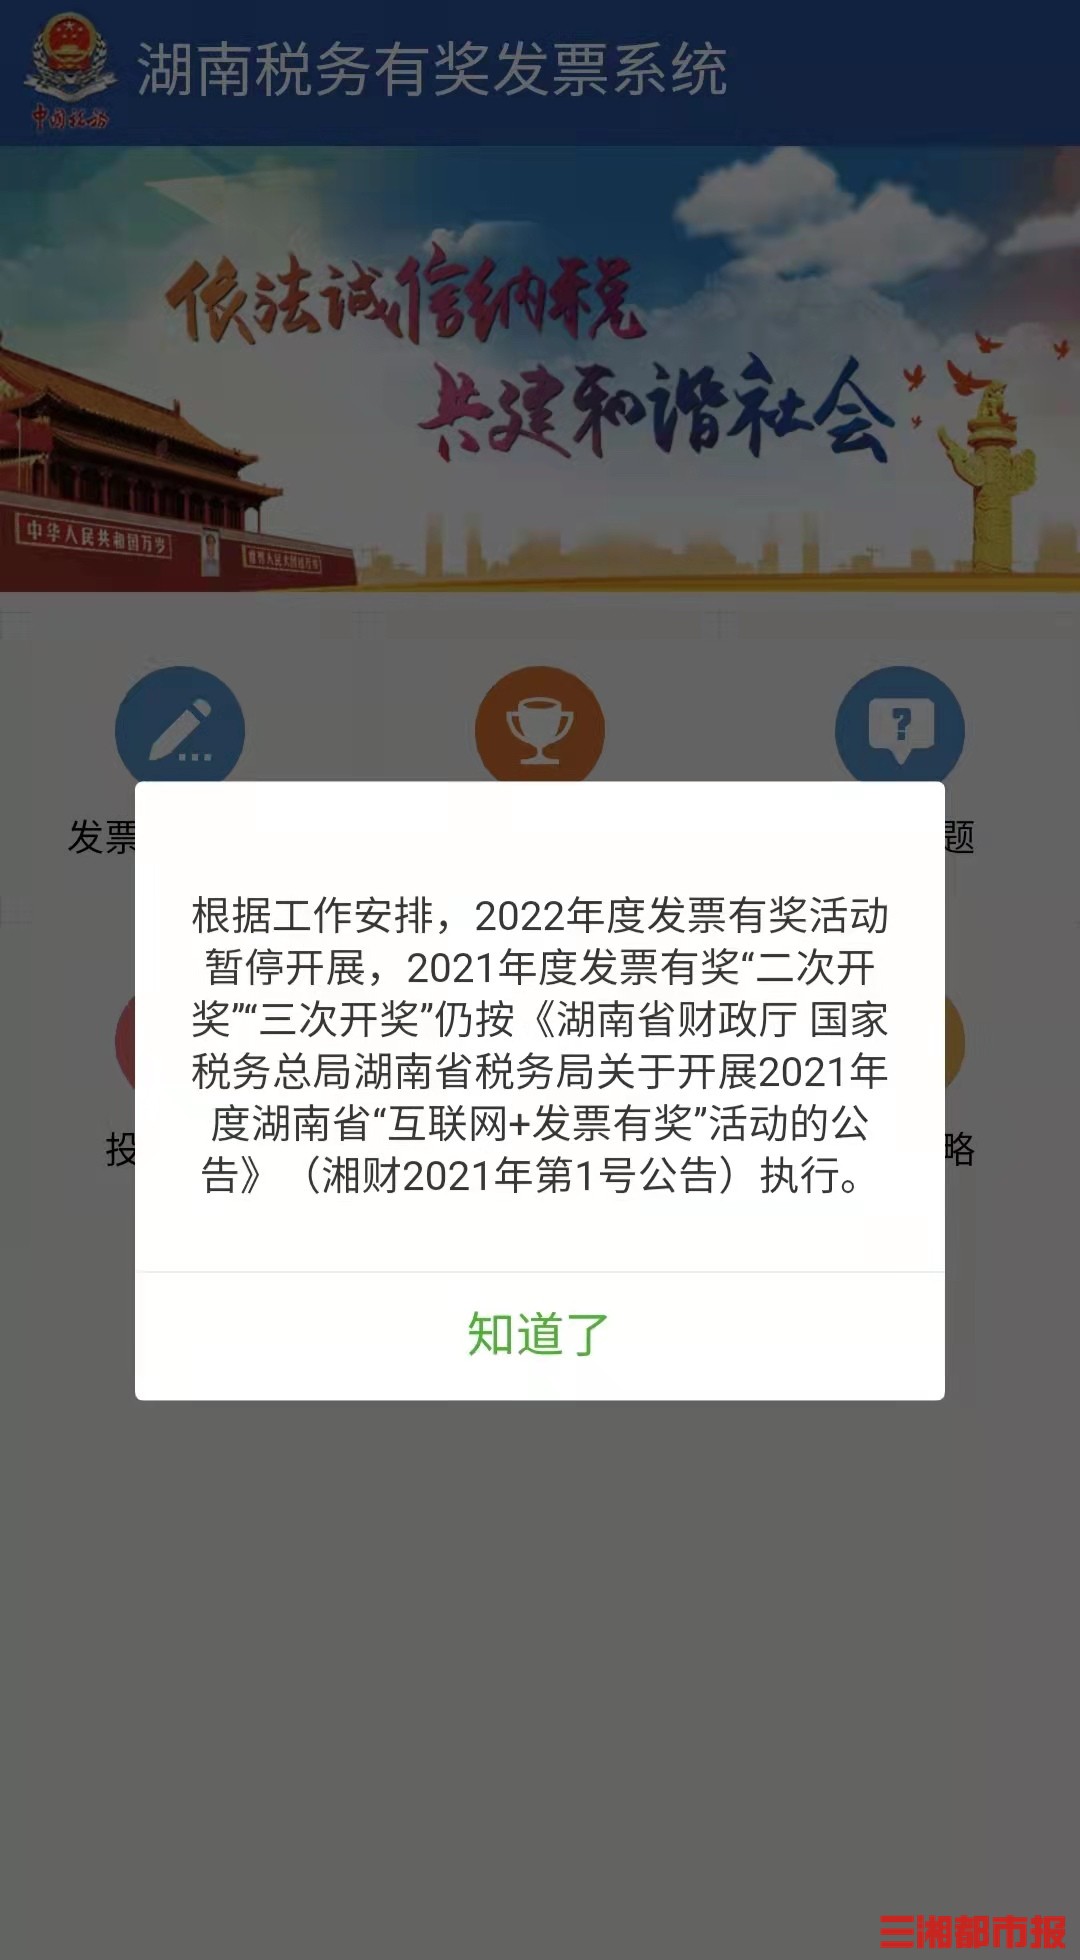 2022年度湖南省发票有奖活动暂停开展